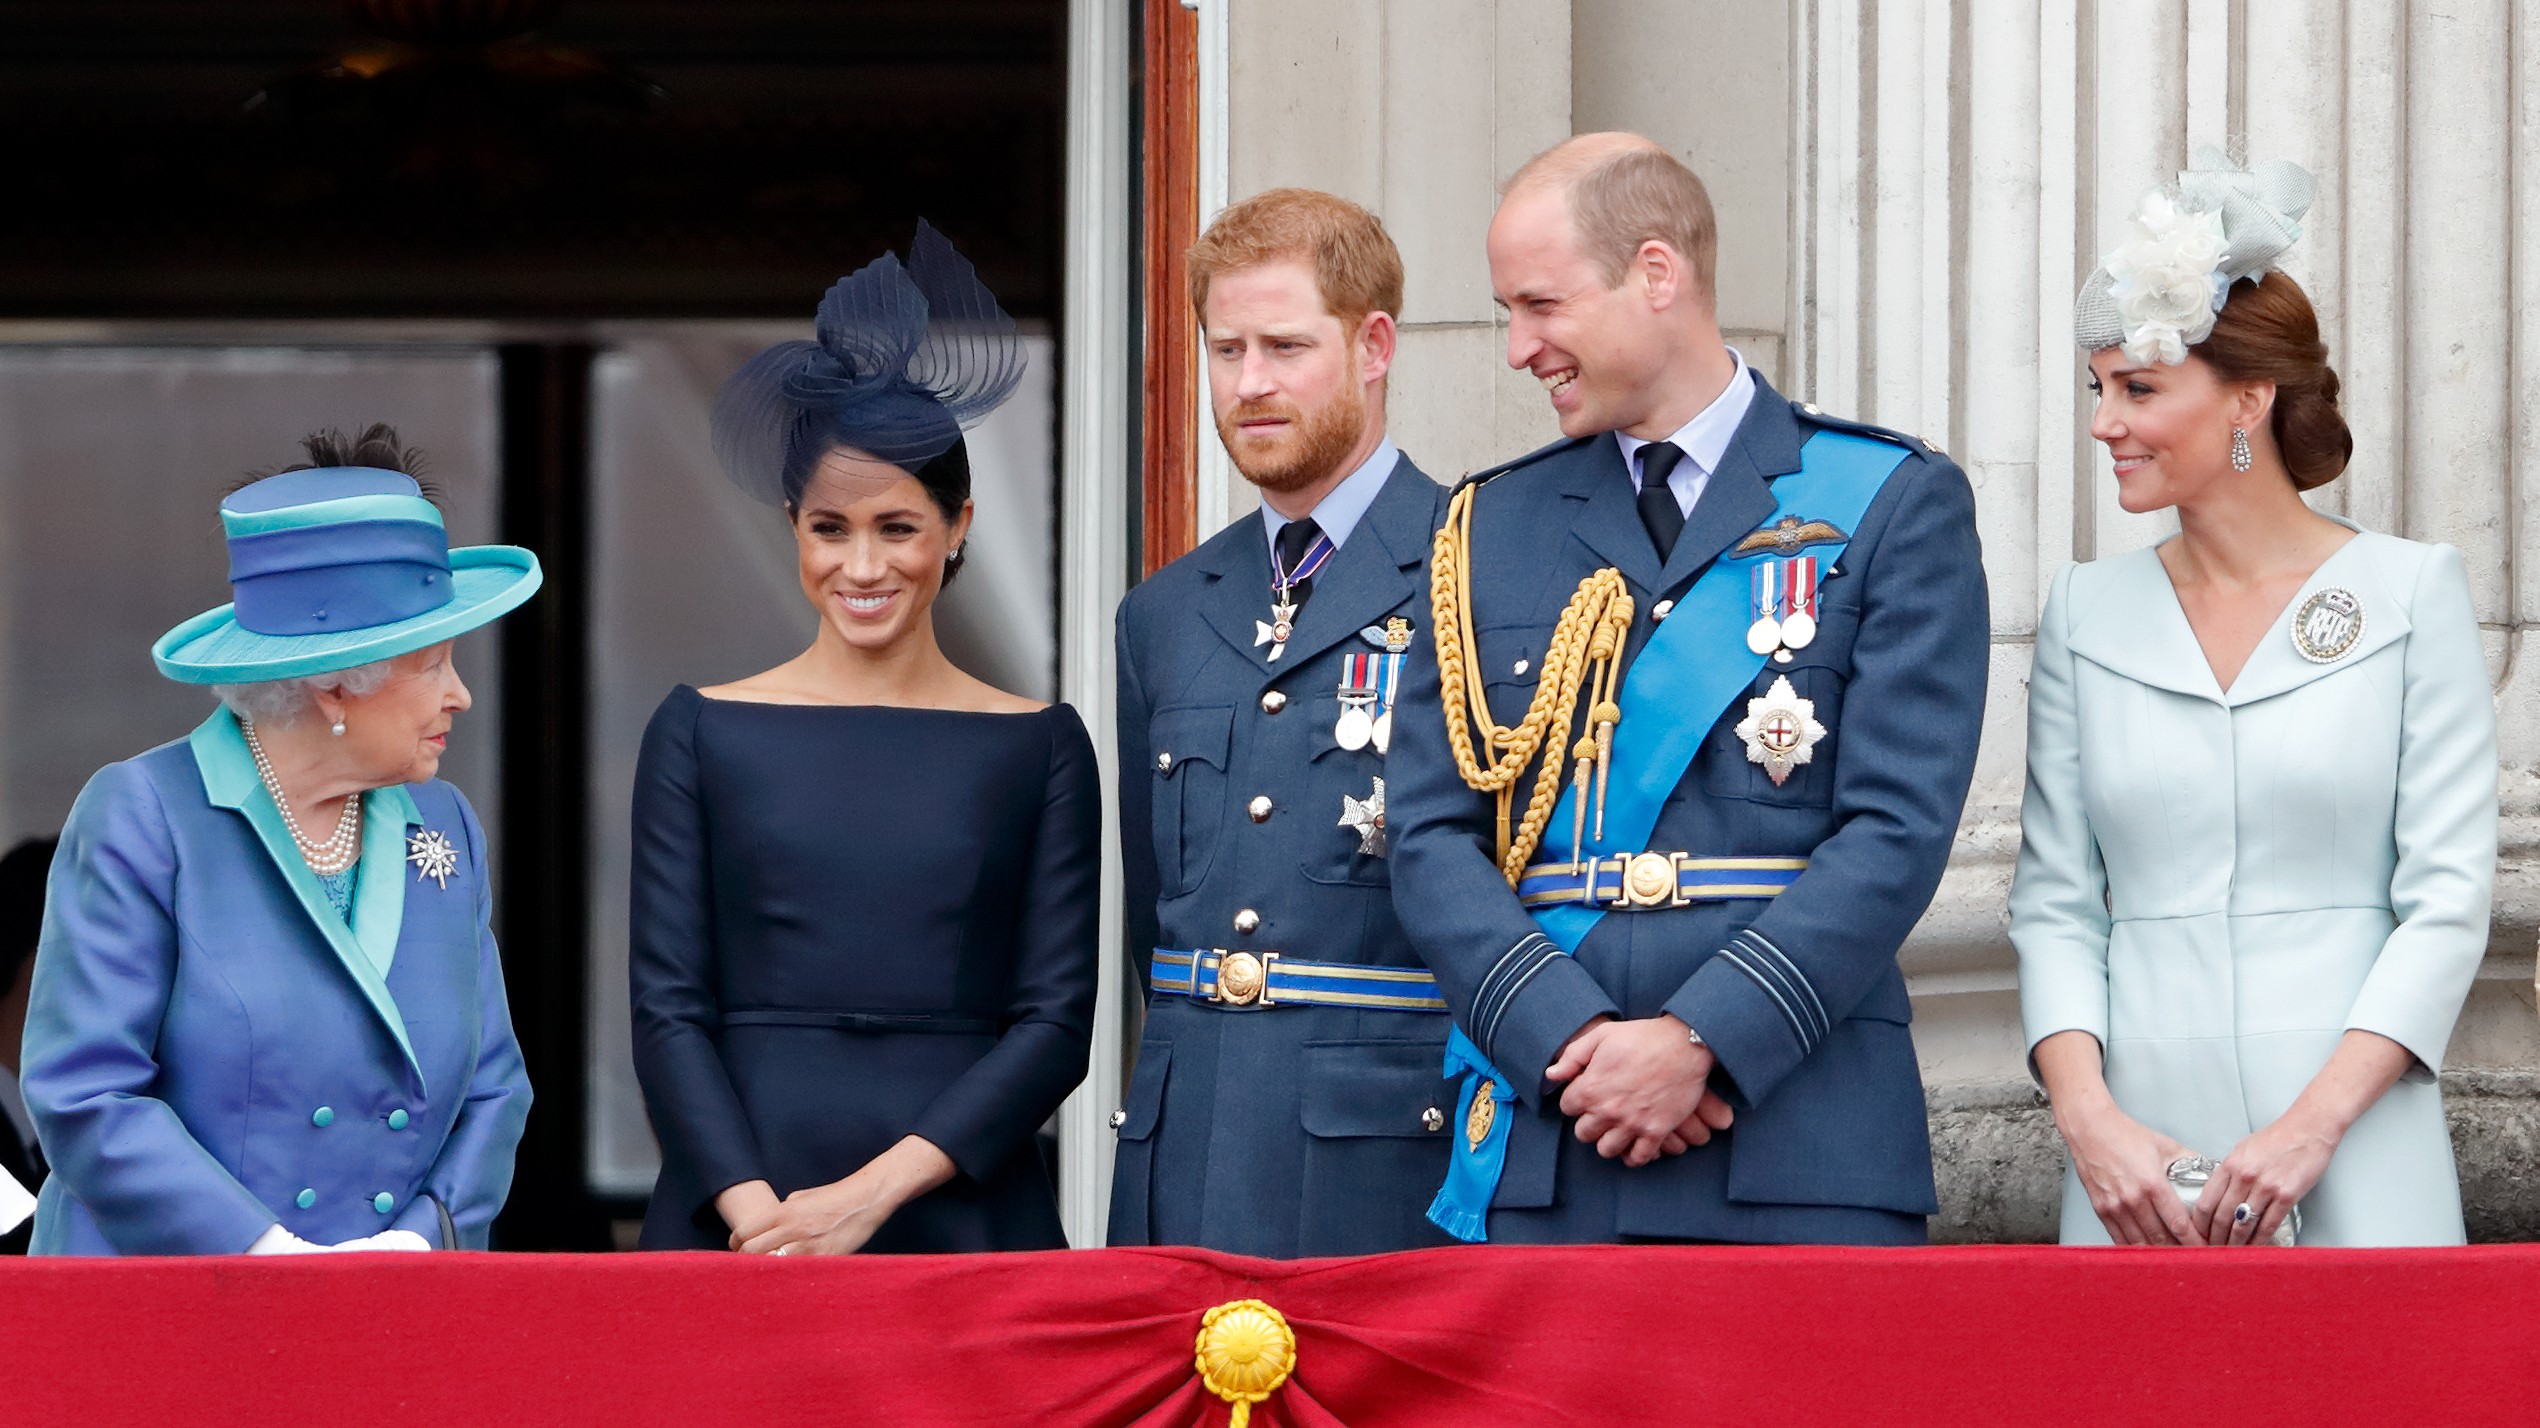 La reina Isabel II con Meghan Markle, el príncipe Harry, el príncipe William y Kate Middleton en un evento real en julio de 2018 (Imagen: Getty Images)